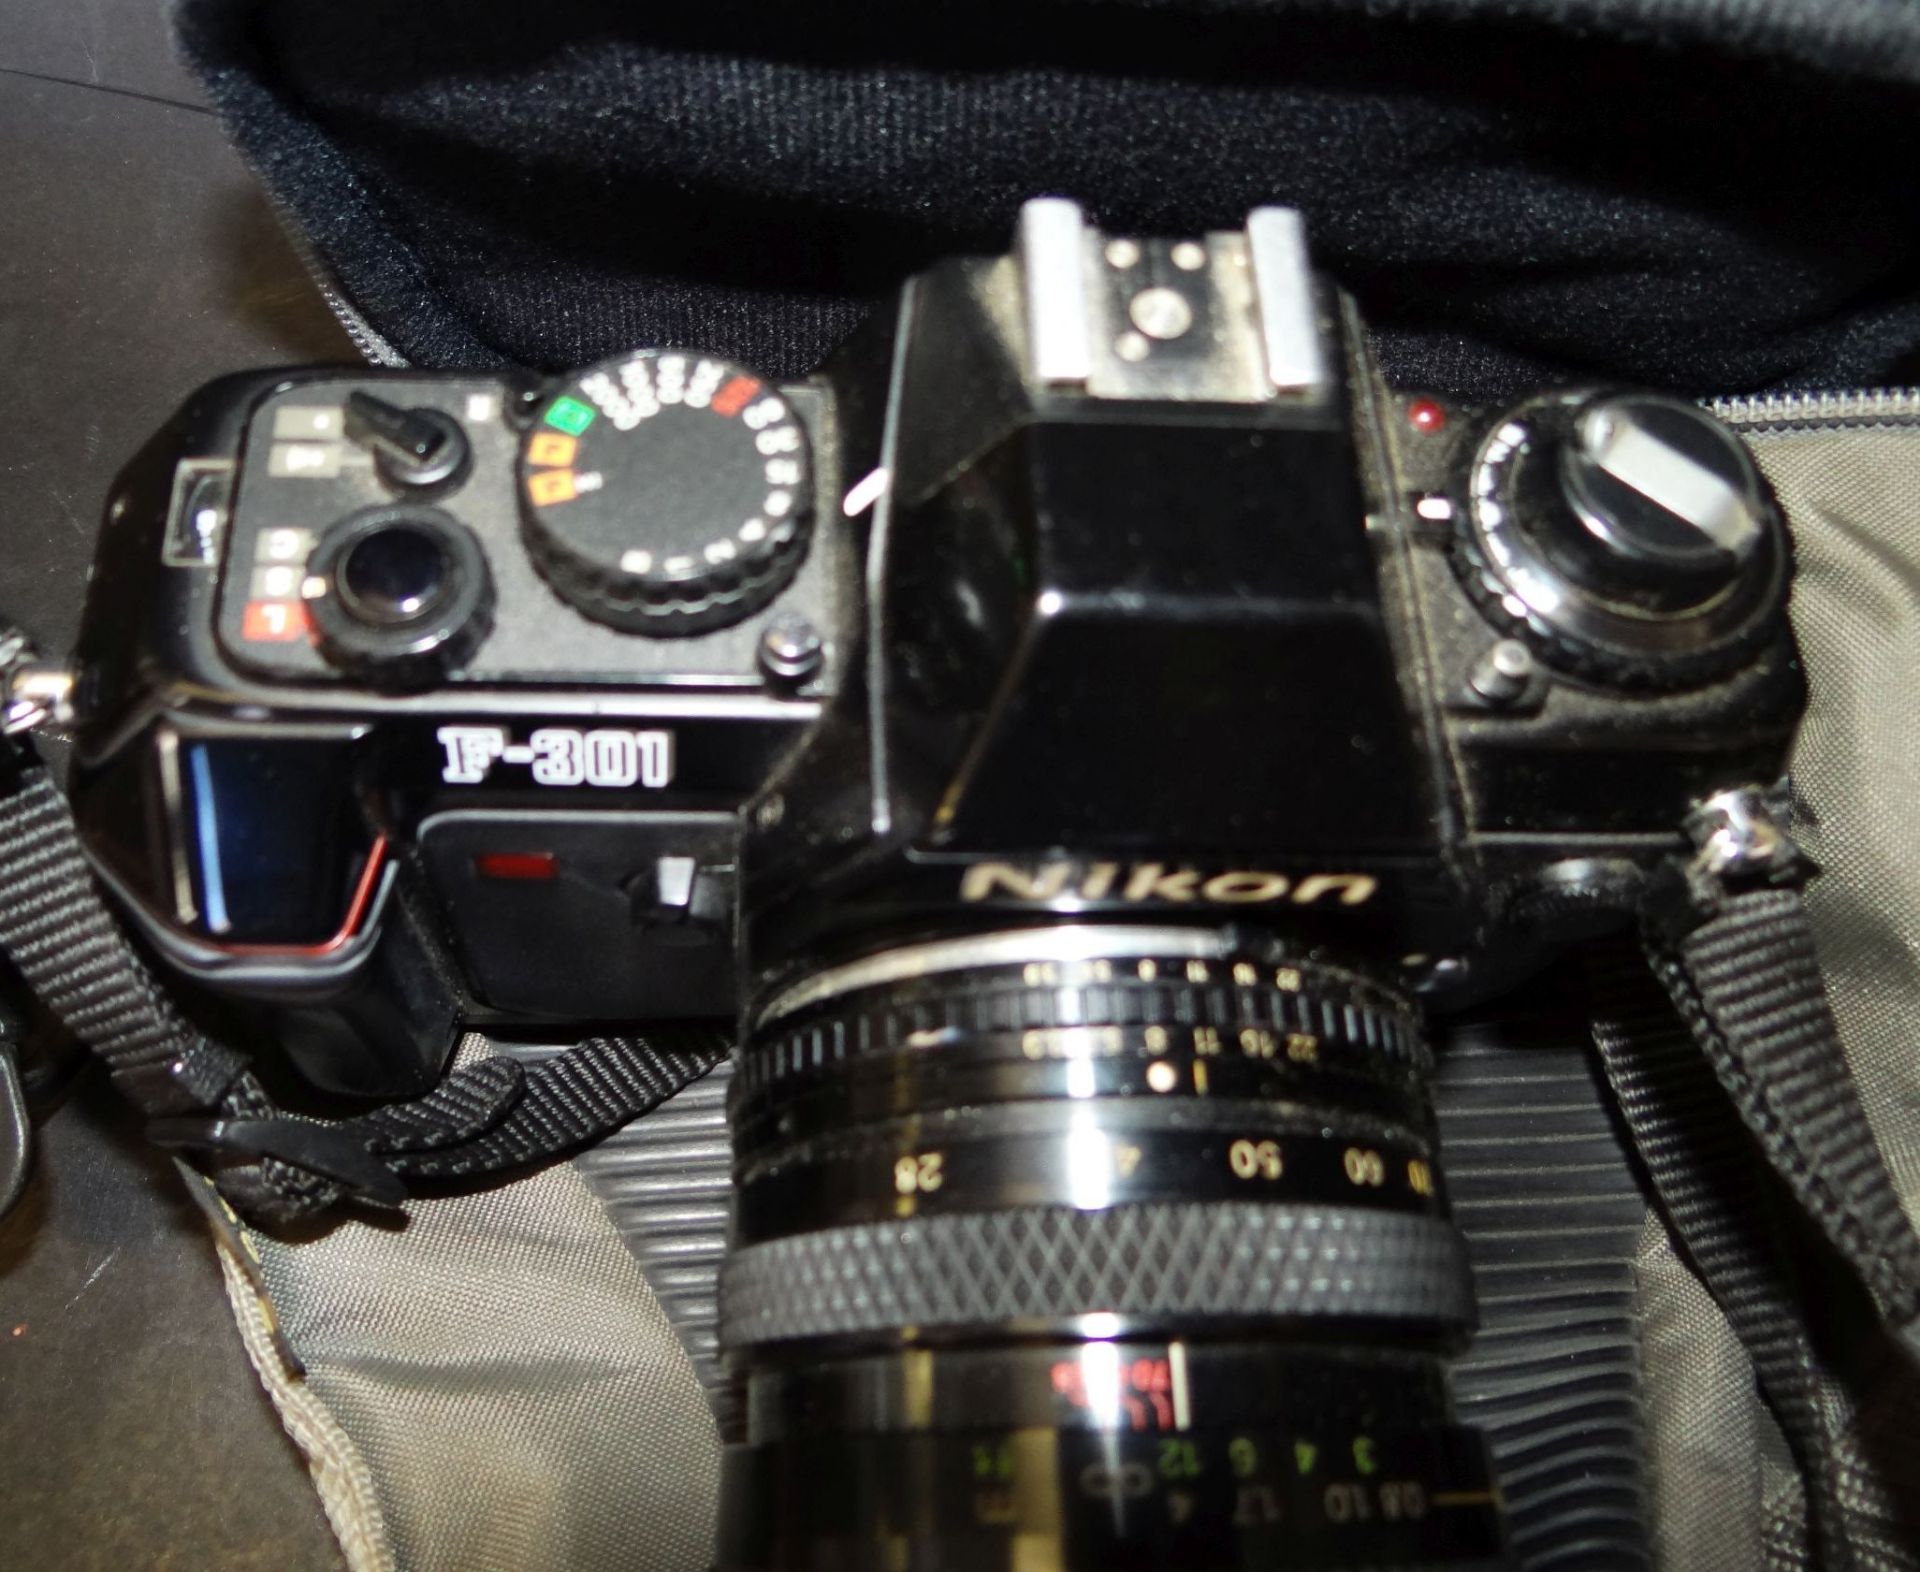 Fotoapparat NIKON F-301 mit Tasche, eine Skalenanzeige lose - Bild 2 aus 4